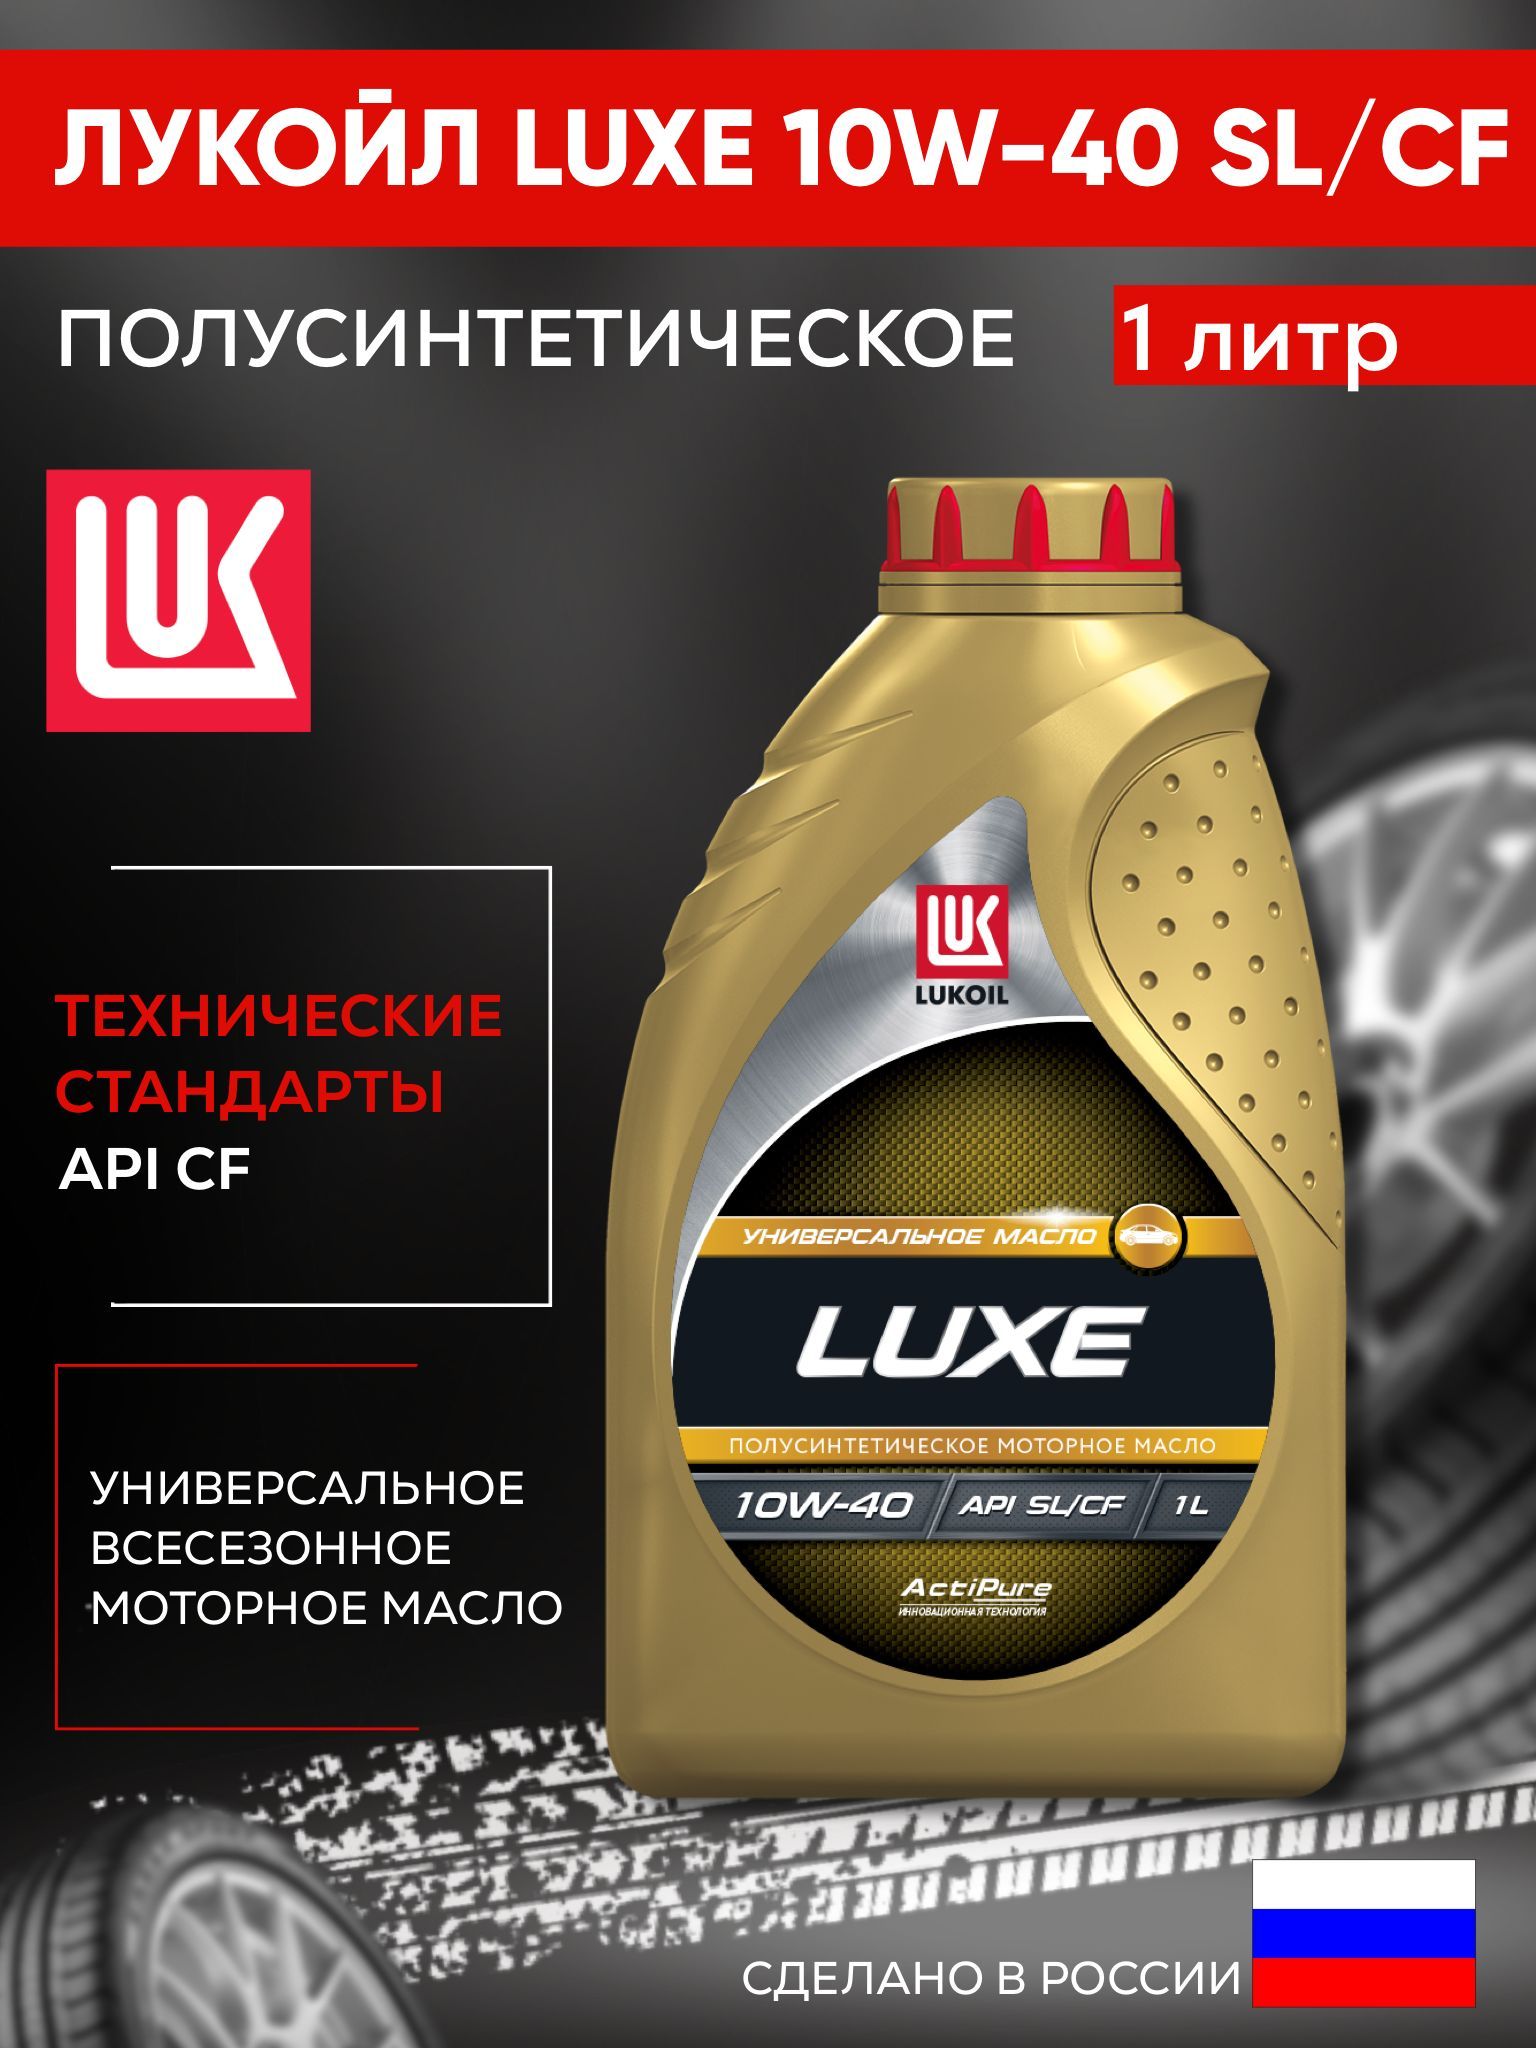 Lukoil Luxe 10w-40. Lukoil Avantgarde Ultra 10w-40. Лукойл Люкс 10w 40 характеристики. Лукойл Люкс 10w 40 полусинтетика отзывы.